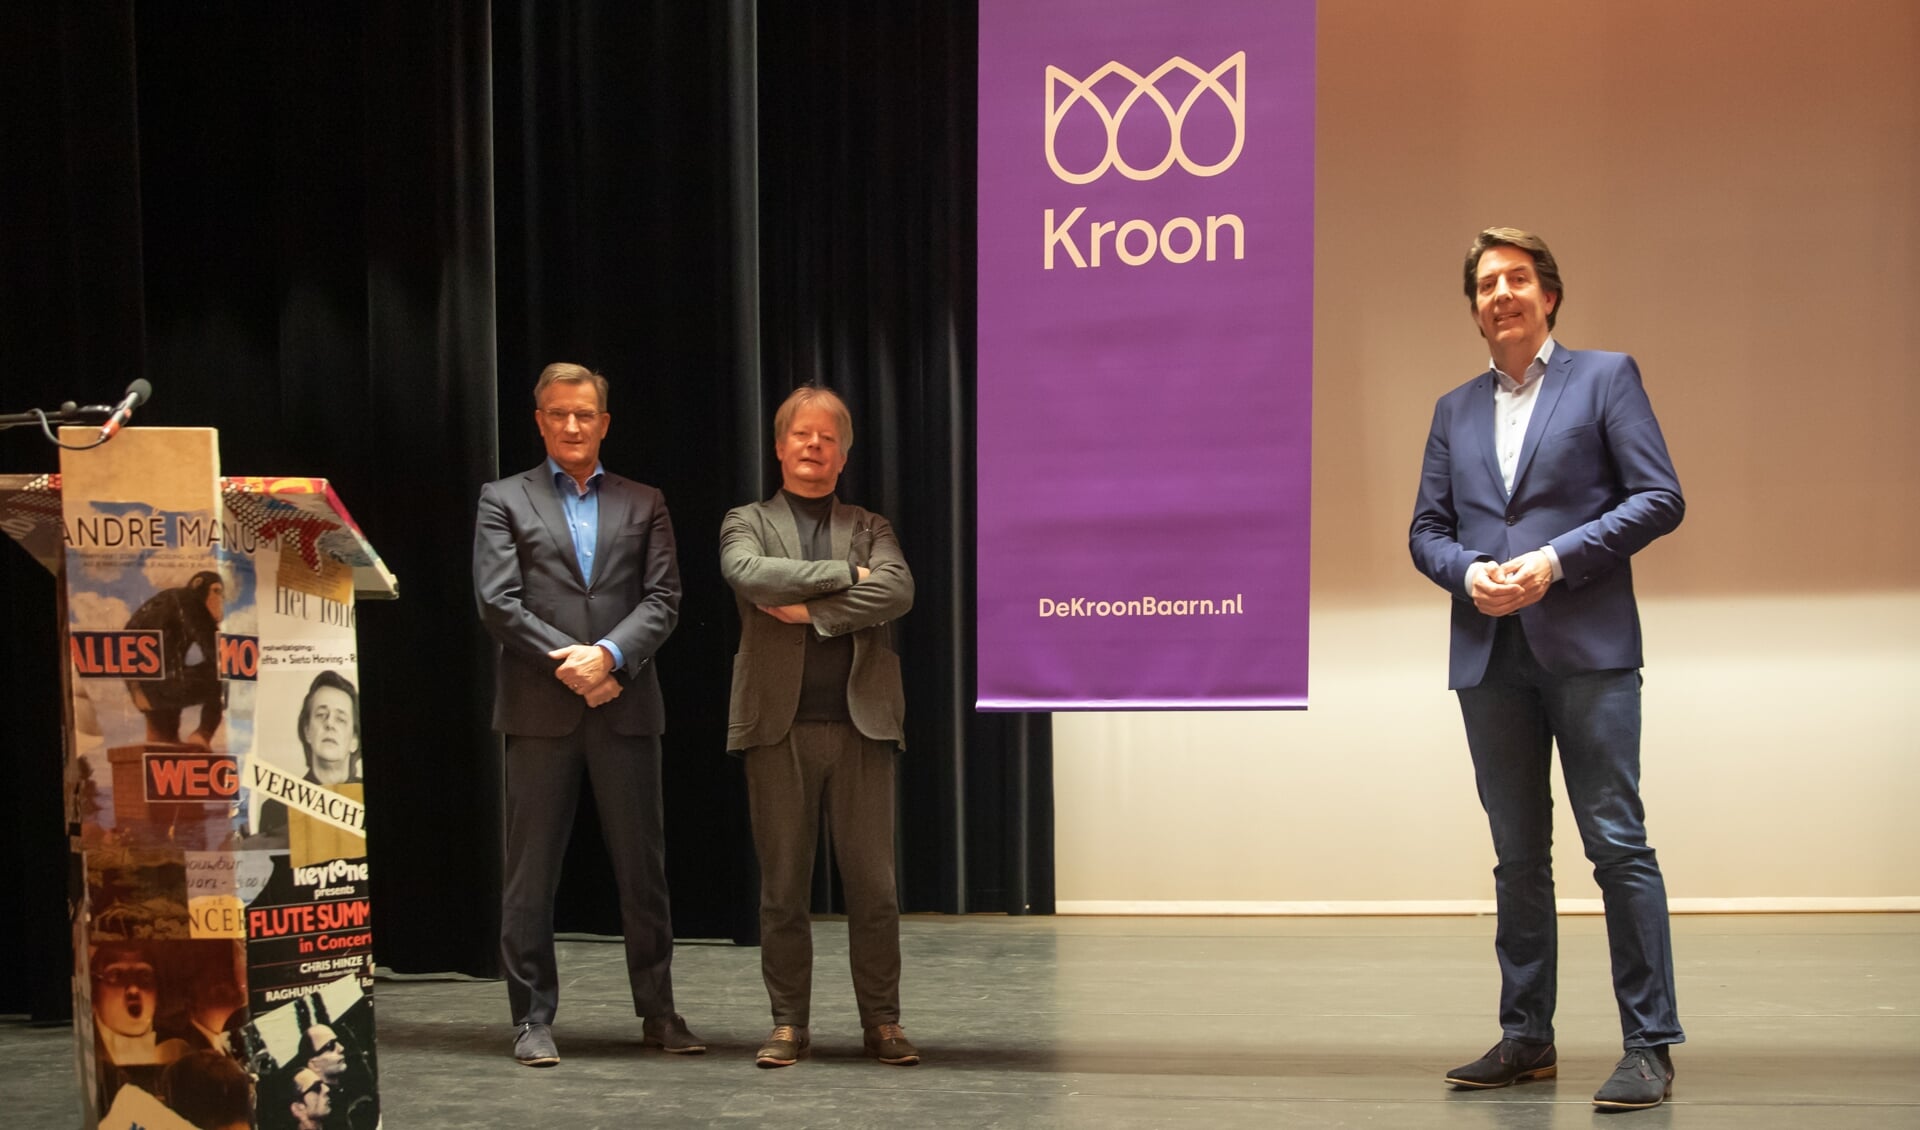 Theaterdirecteur Tom van der Poel, Bibliotheek Eemlanddirecteur Erno de Groot en wethouder Hugo Prakke (vlnr) maakten zaterdag de naam bekend.